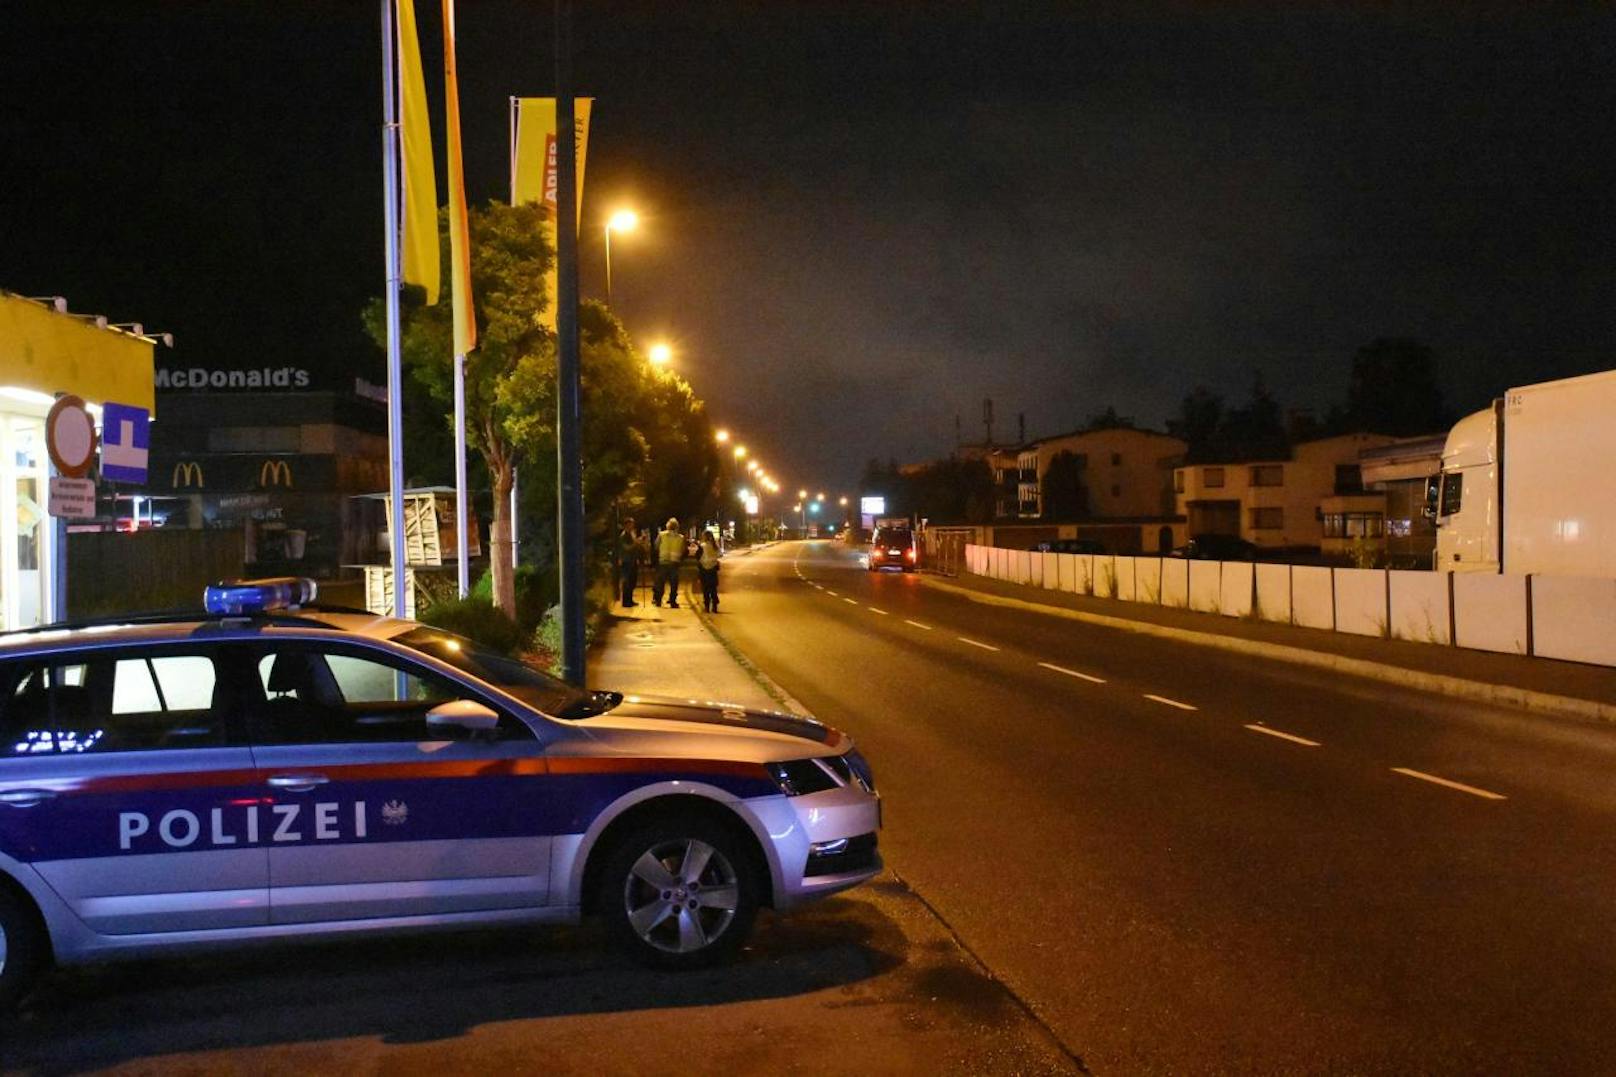 Die unbekannten Täter ergriffen nach der Messerattacke mit zwei Fahrzeugen die Flucht in Richtung Stadtzentrum Wörgl. Die näheren Umstände zum Tathergang sind derzeit noch Gegenstand der polizeilichen Ermittlungen.